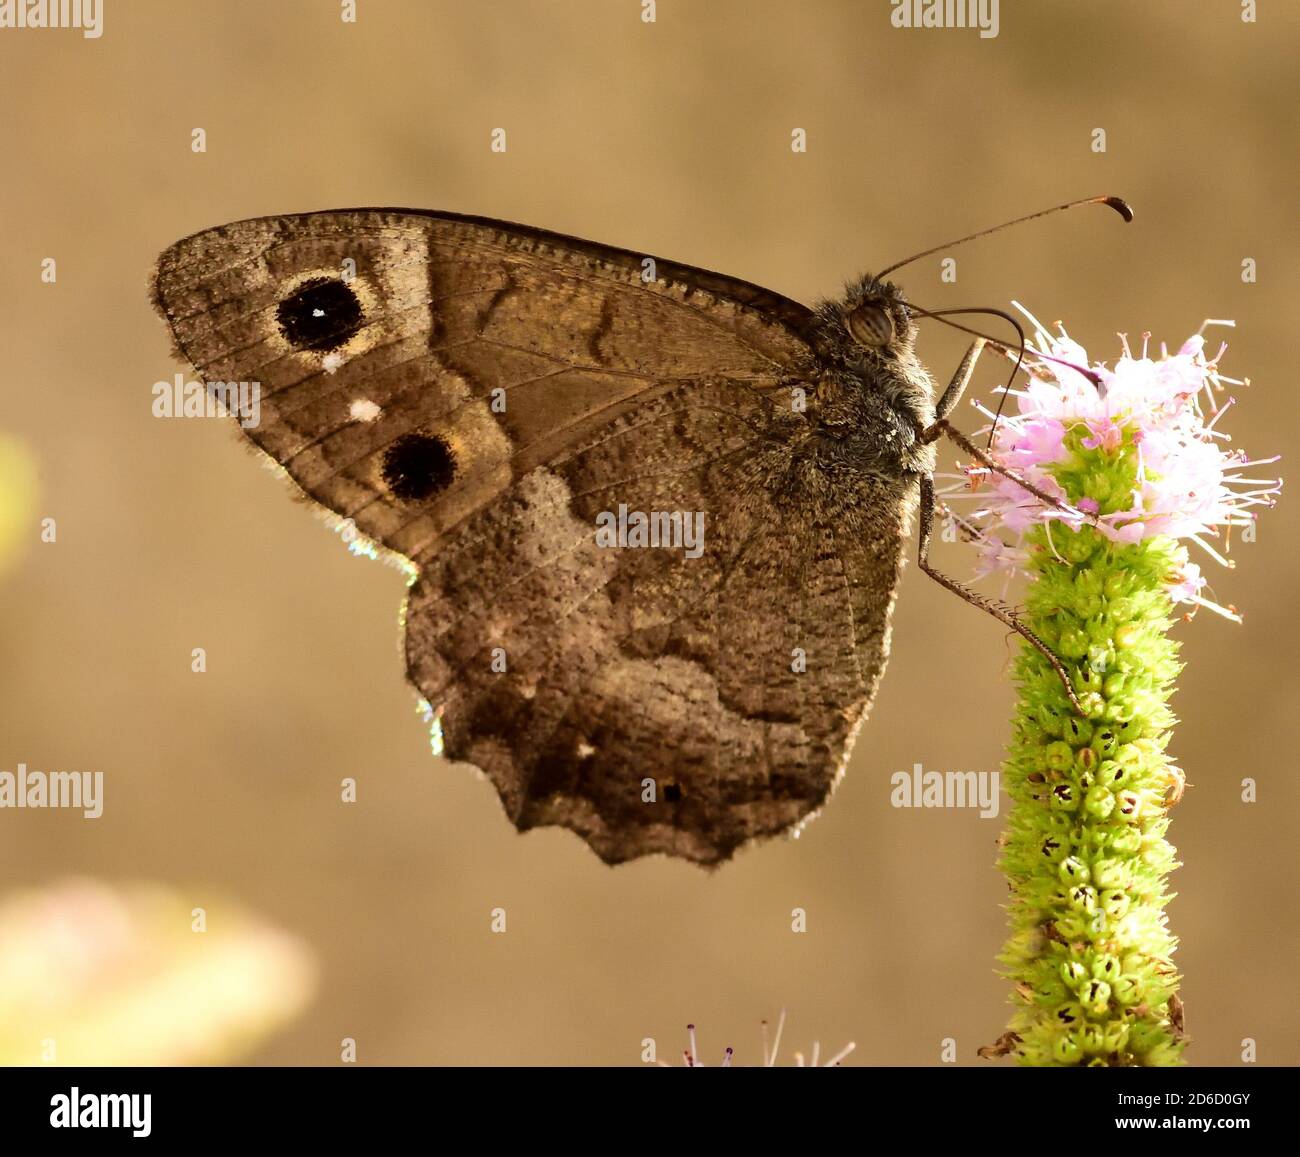 Esemplare isolato di una farfalla della specie Hipparchia statilinus, della famiglia dei nimfalidi. Foto Stock